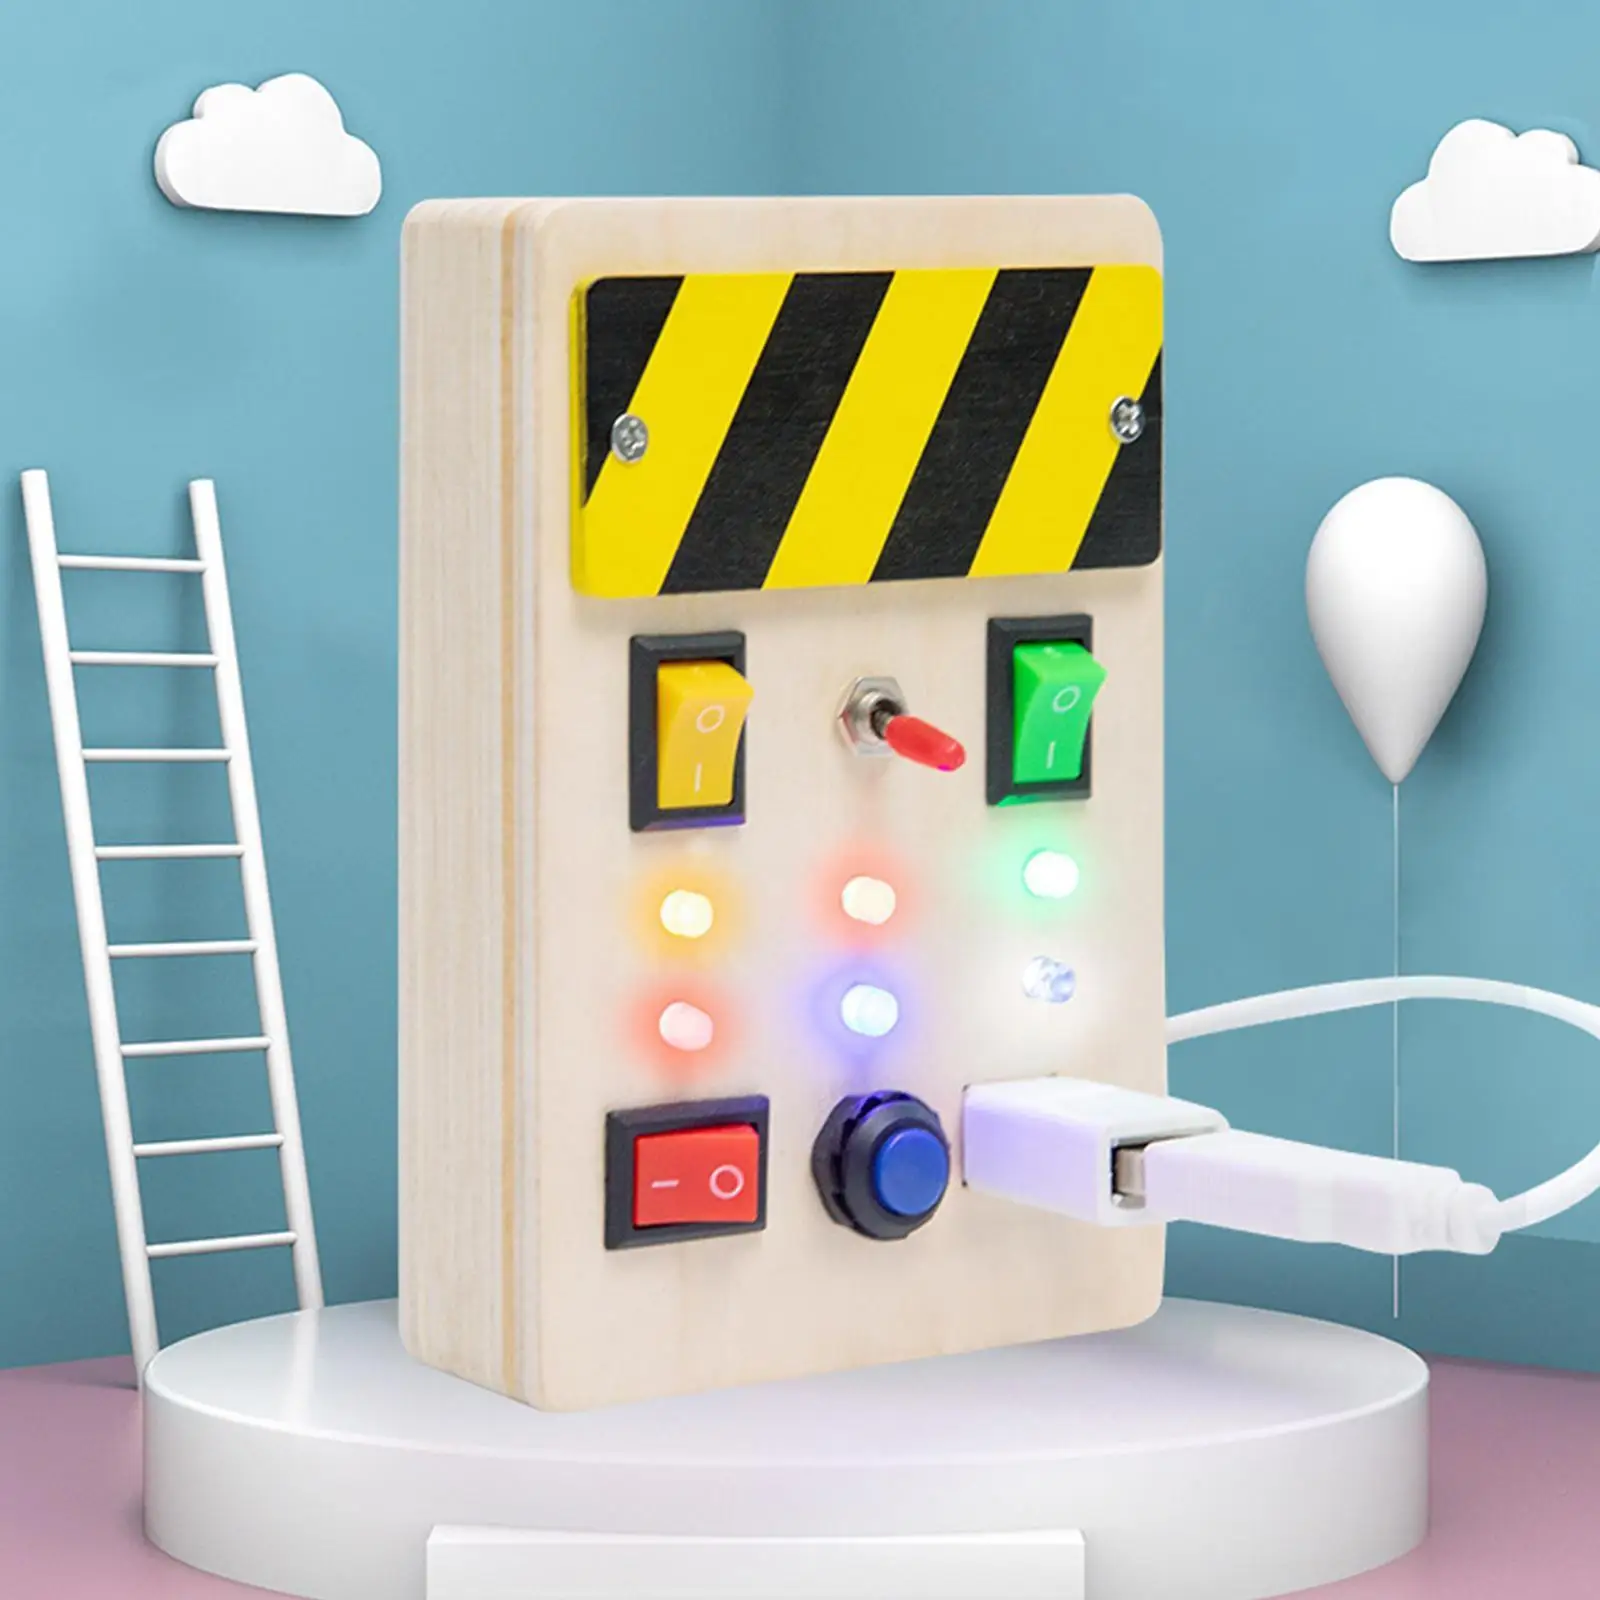 

Игрушка Монтессори, строительная электронная умная доска, сенсорная игрушка, доска для обучения, доска с переключателем, игры Baby Z5F7